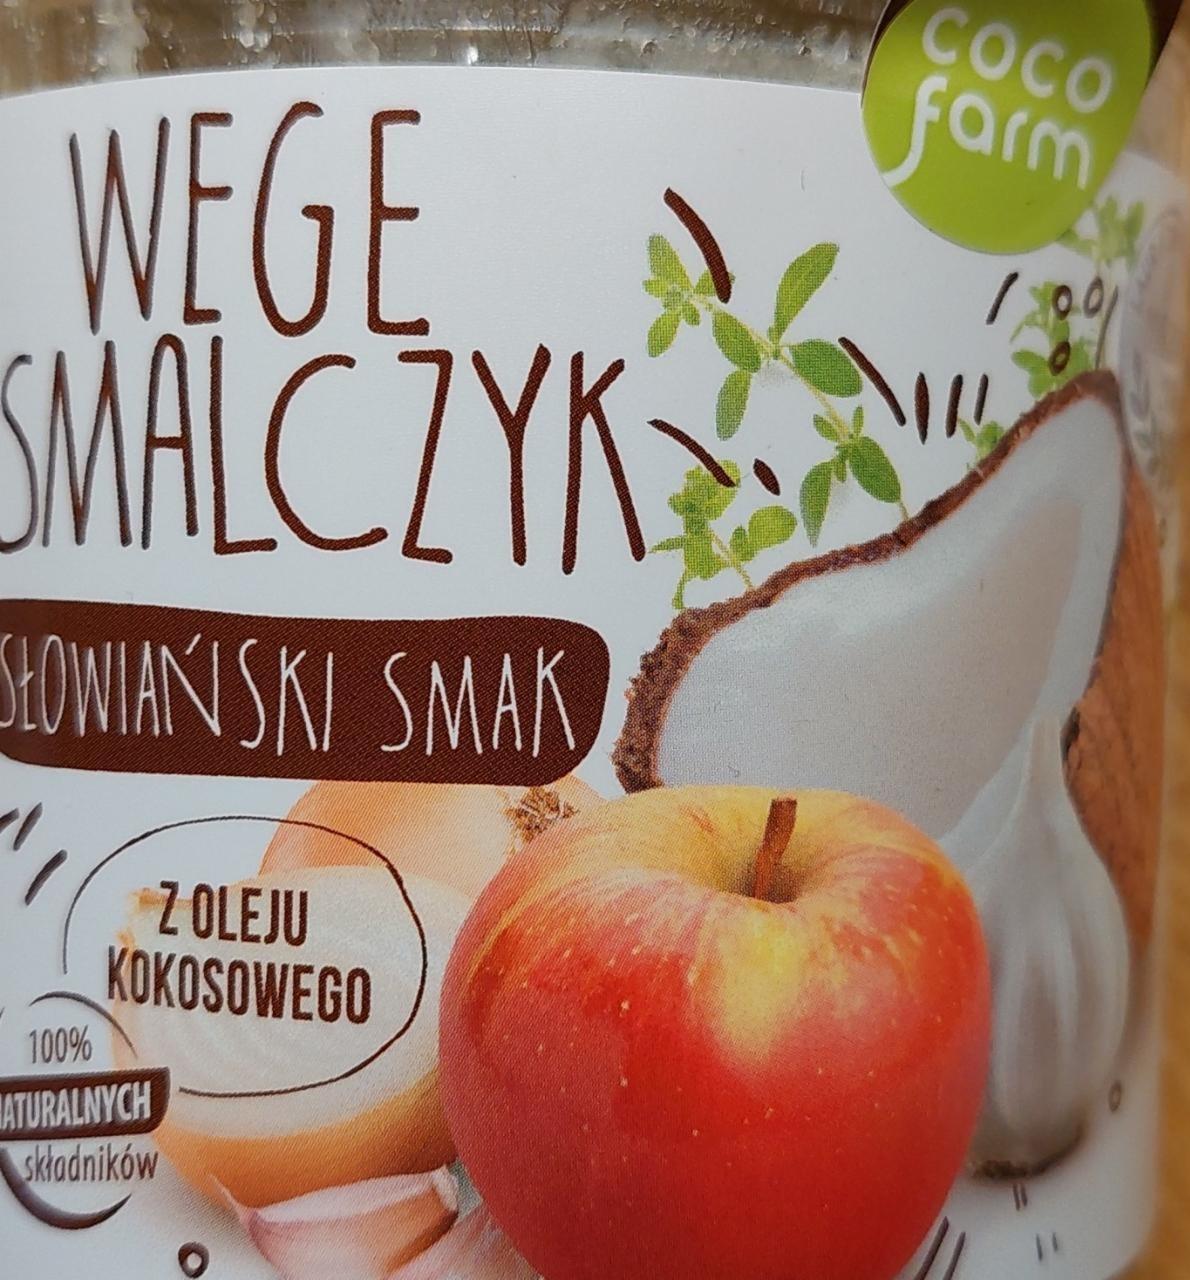 Zdjęcia - Wege smalczyk słowiański smak coco farm